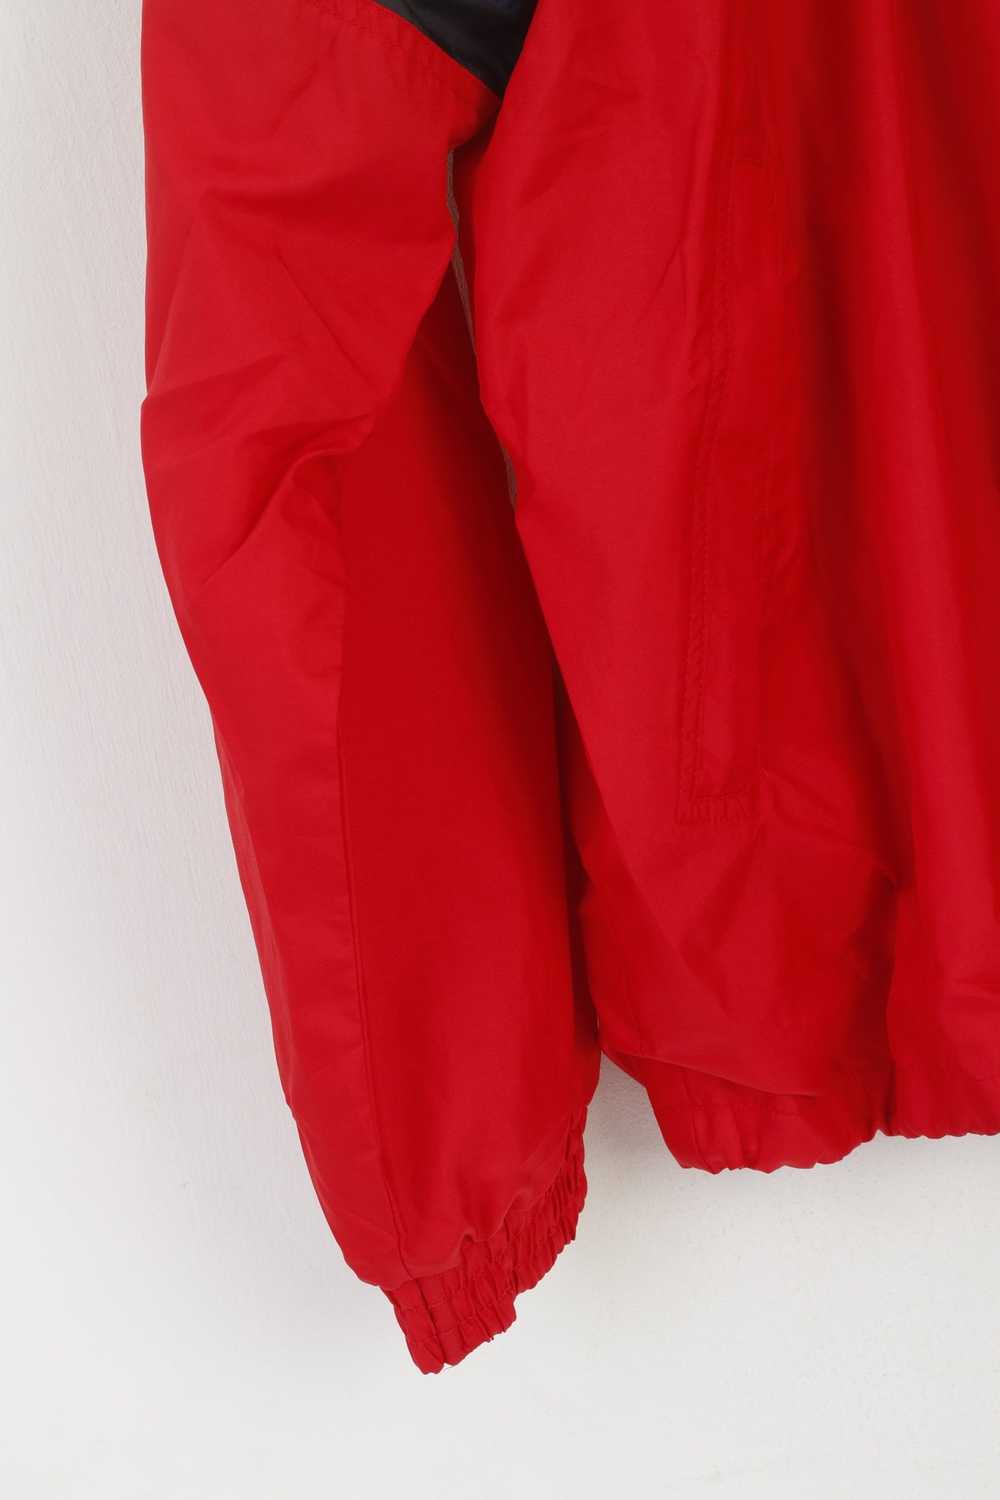 Other Super Pros Men XL Jacket Red Vintage Sport … - image 3